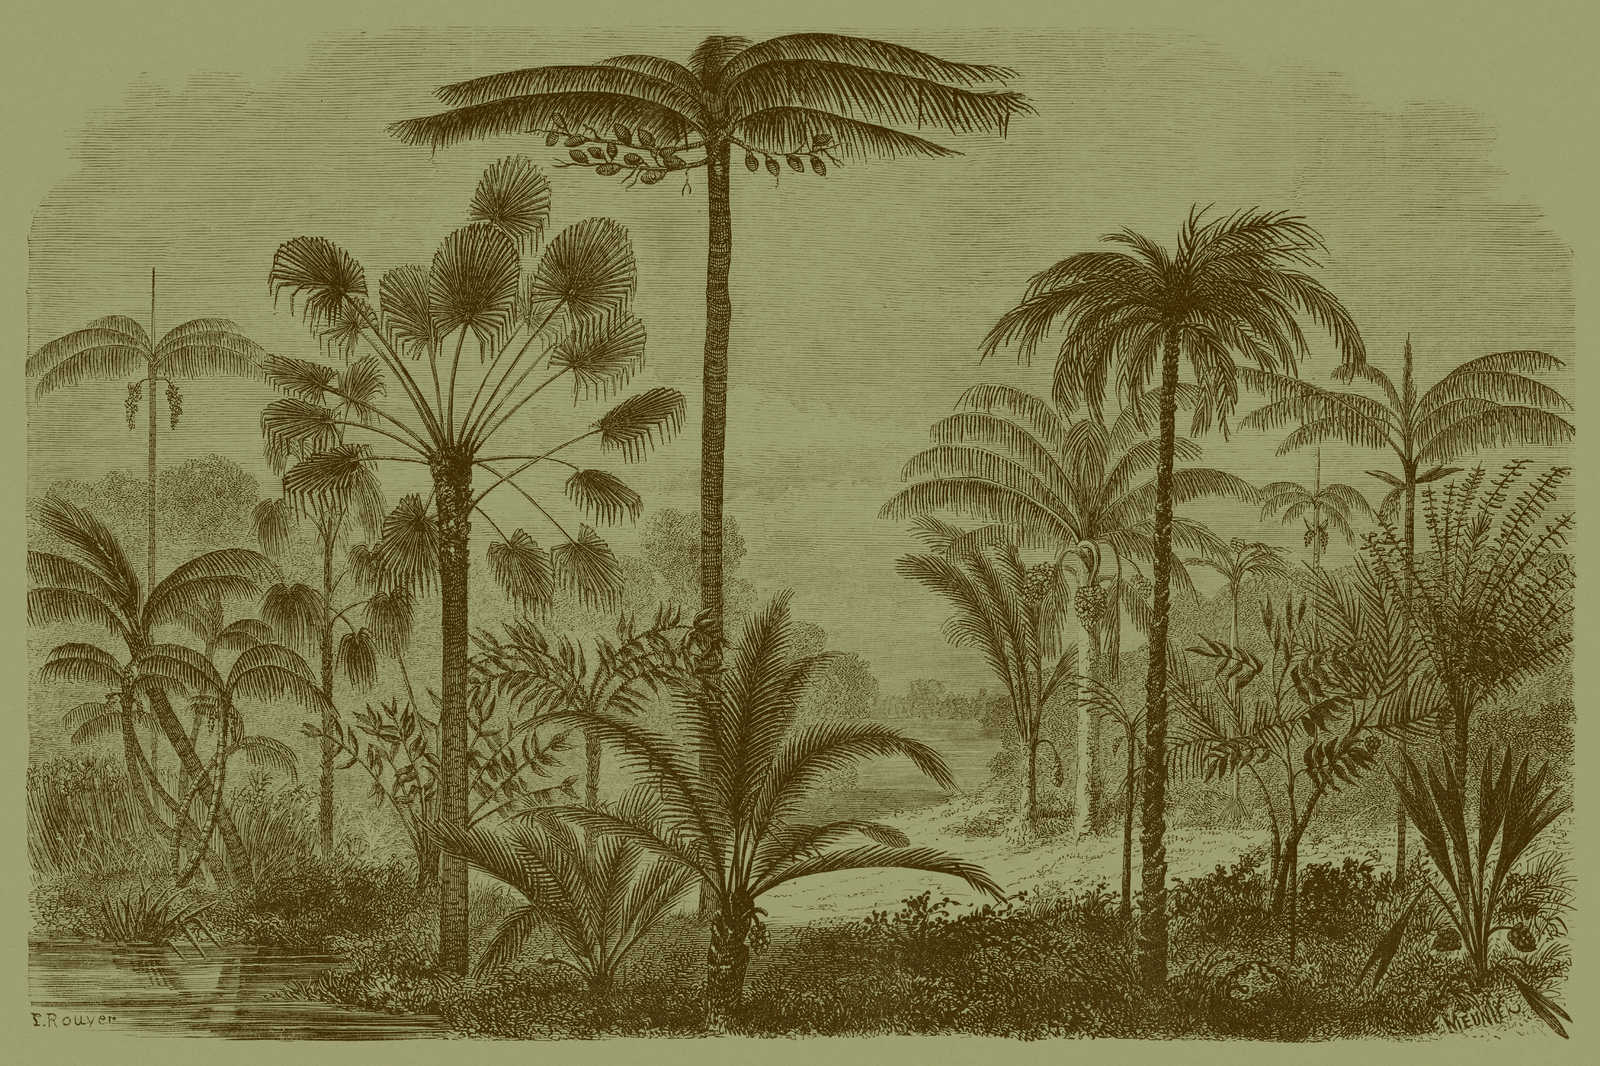             Jurassic 1 - Leinwandbild Dschungelmotiv Kupferstich – 0,90 m x 0,60 m
        